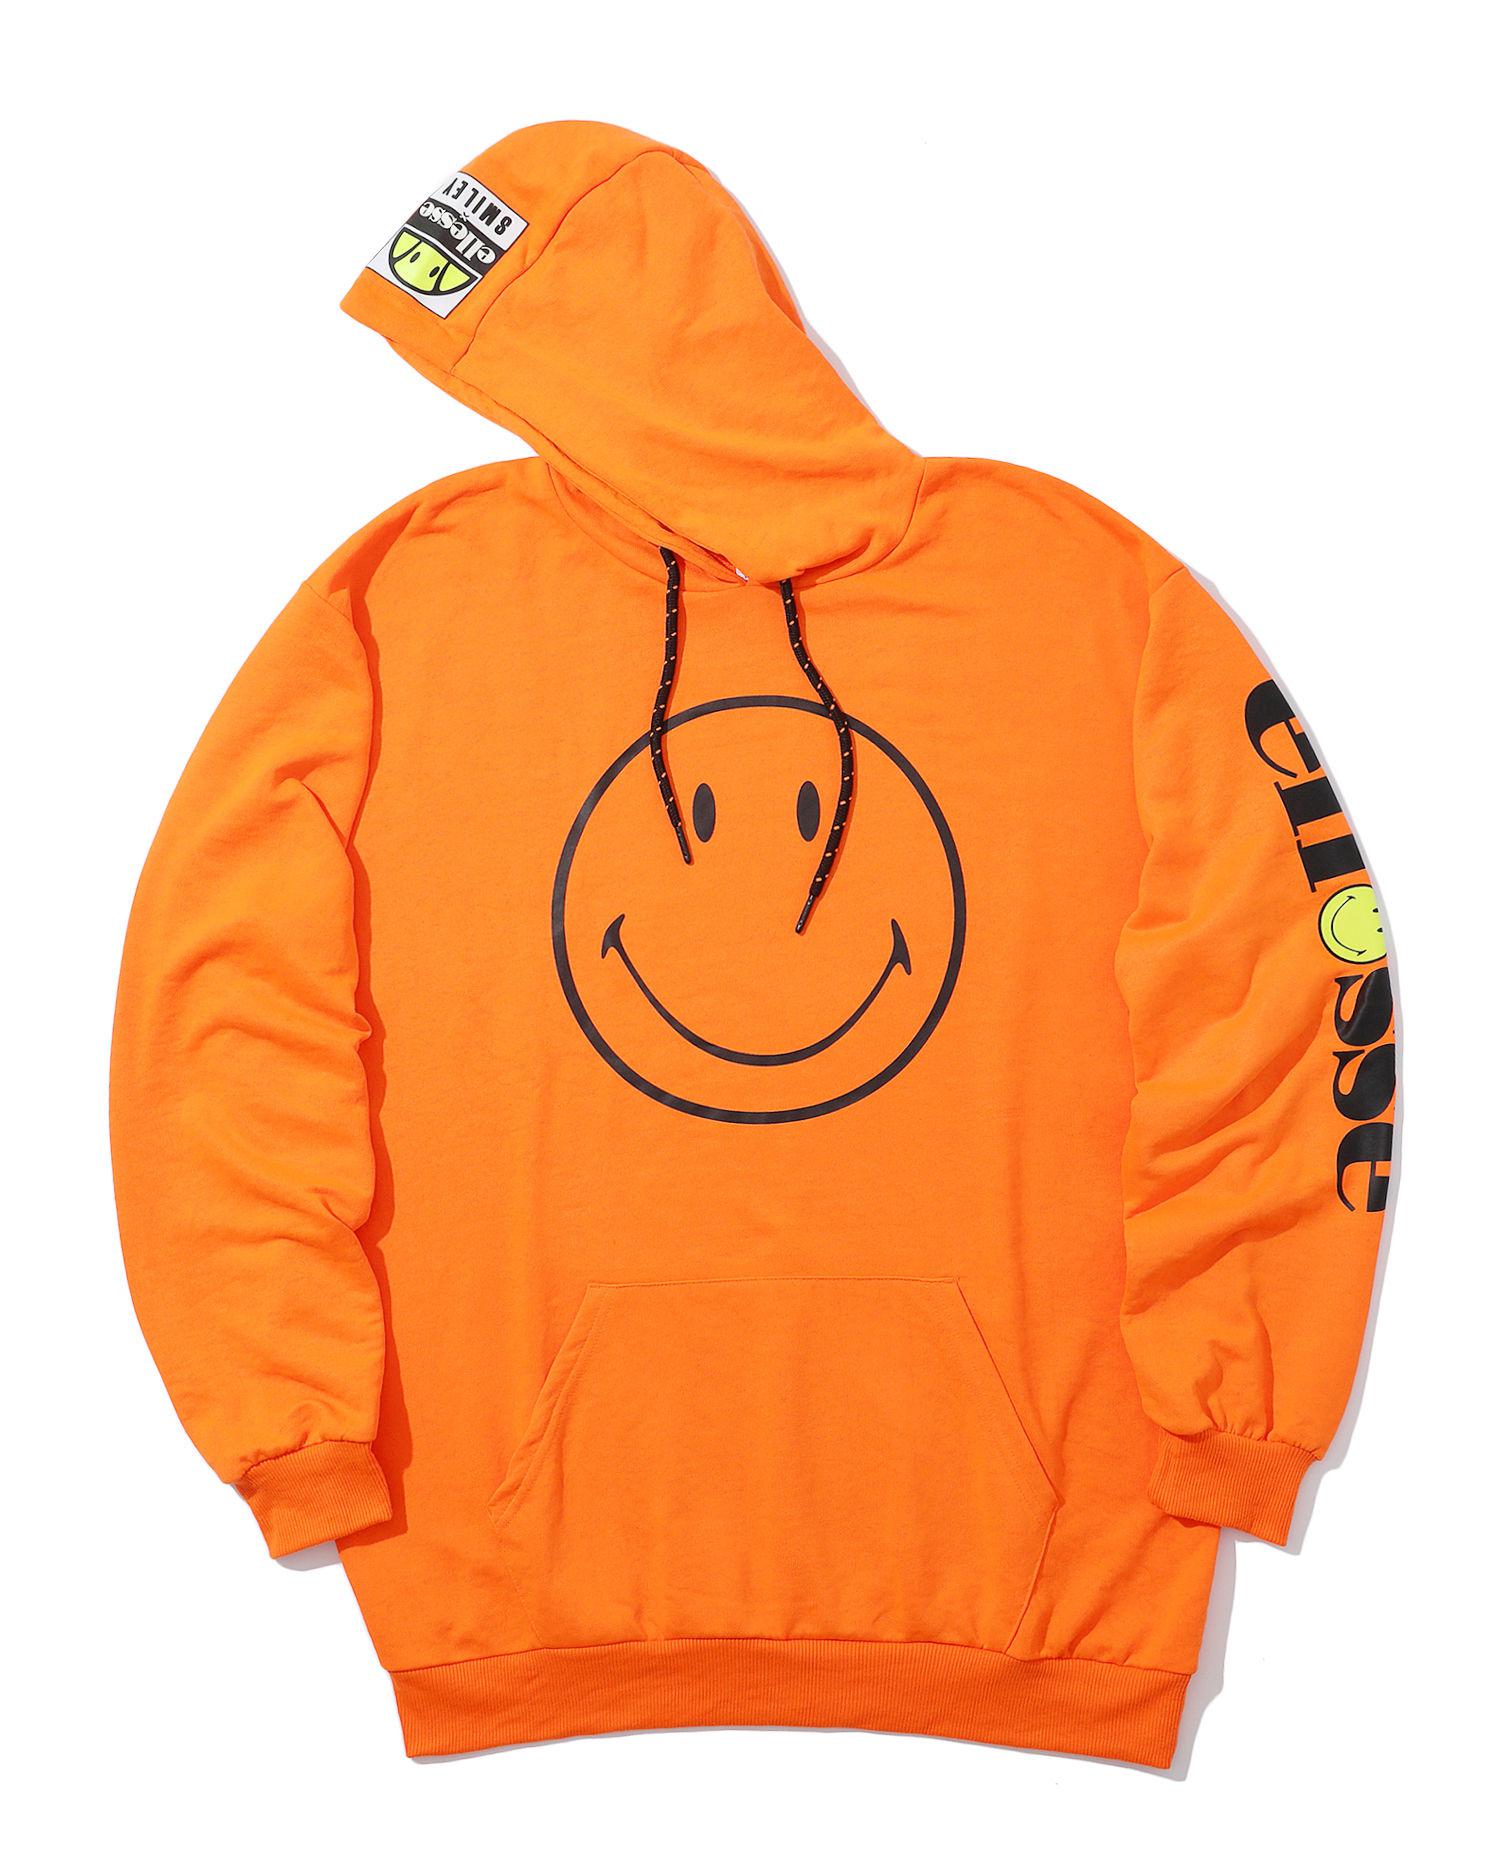 X Smiley logo hoodie by ELLESSE